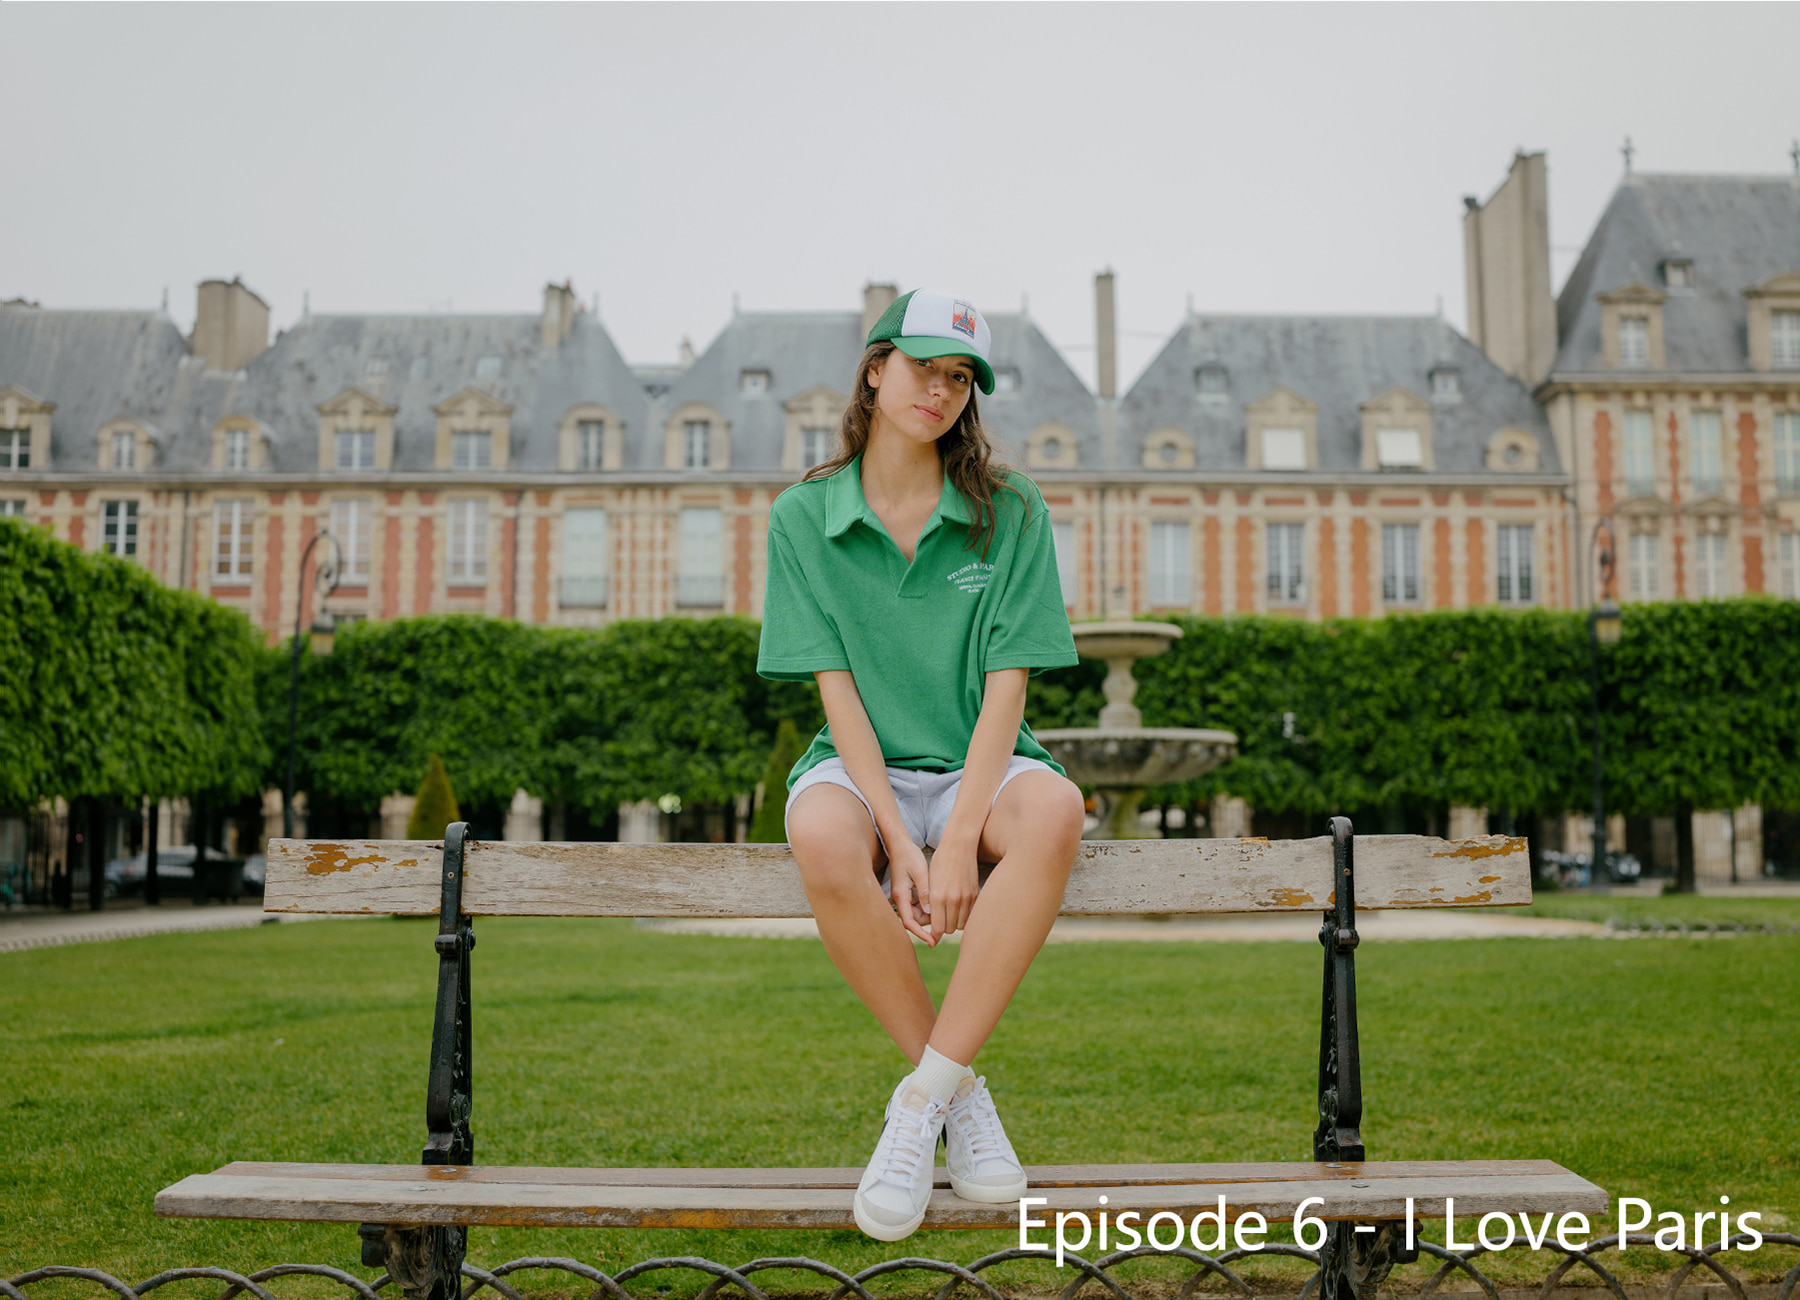 Episode 6 - I Love Paris